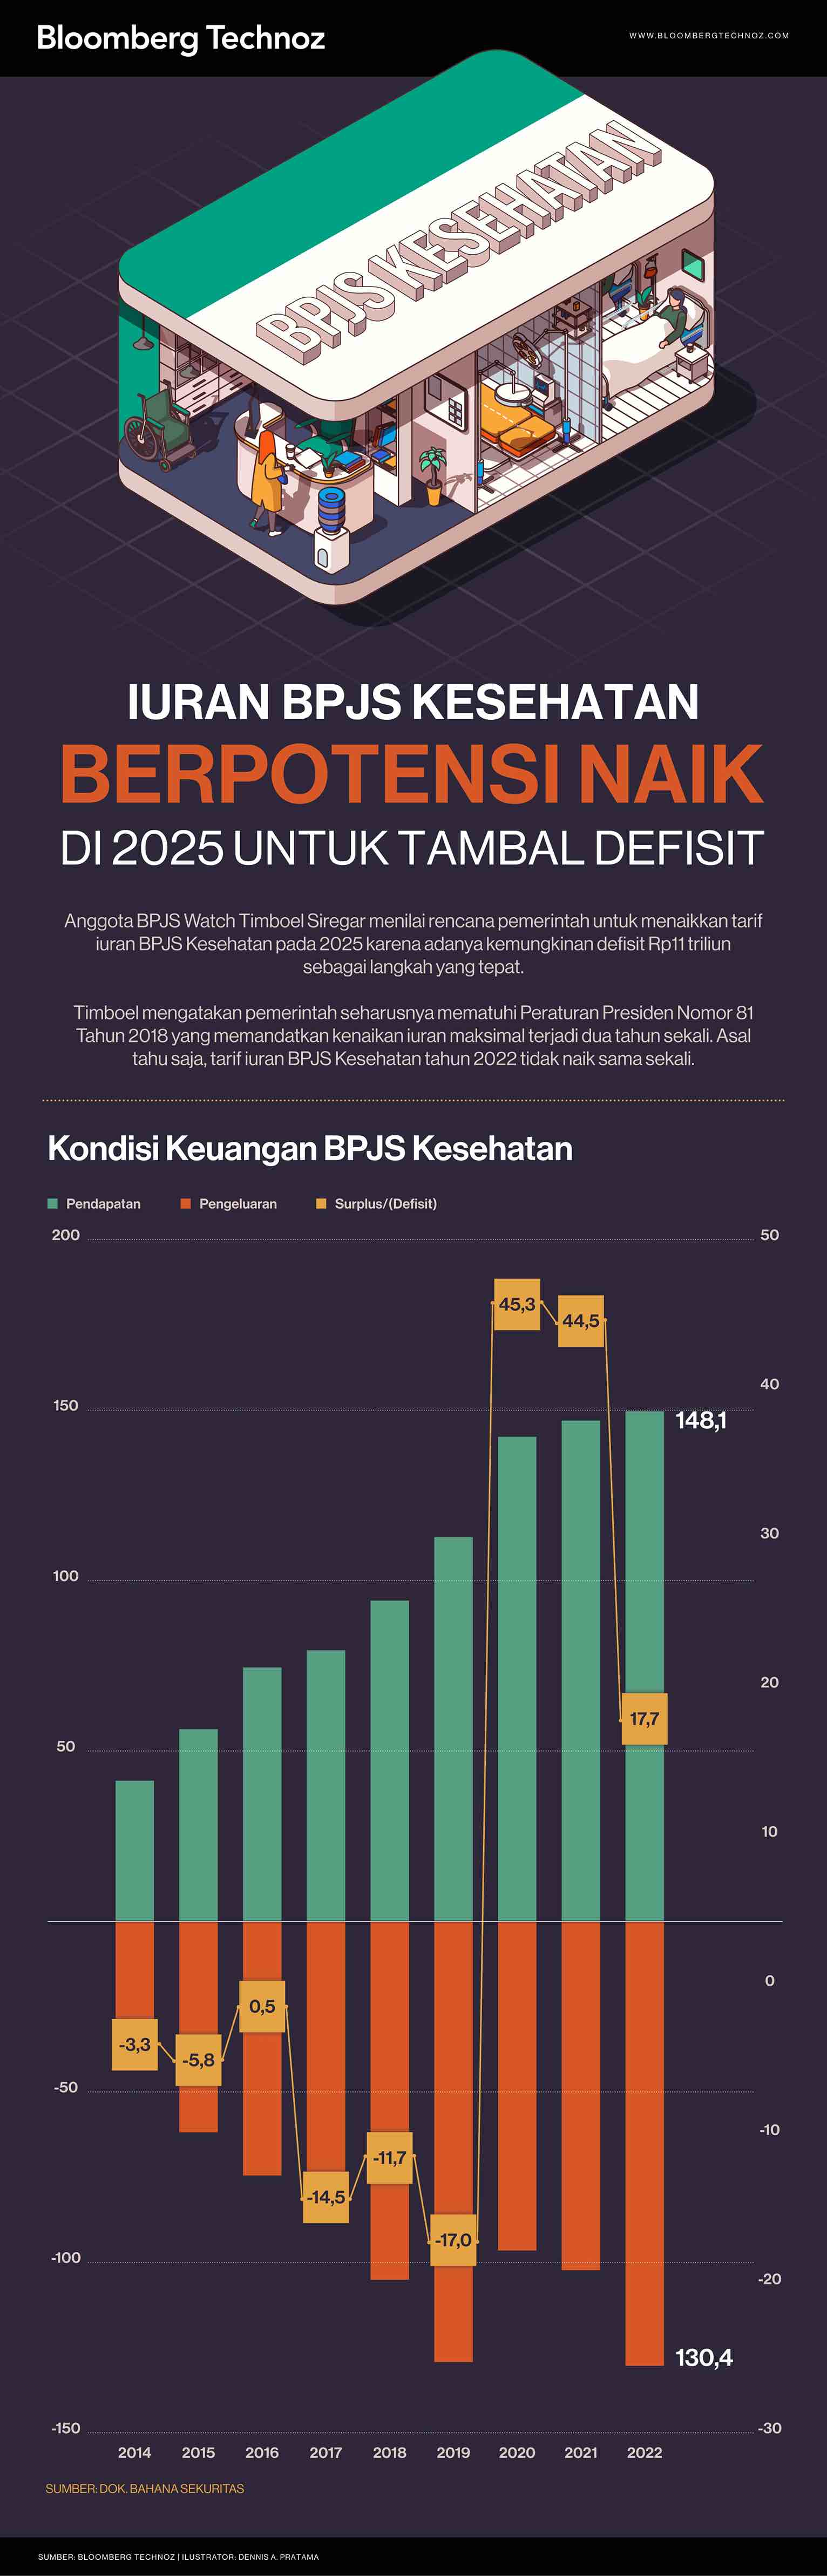 Iuran BPJS Kesehatan Berpotensi Naik di 2025 untuk Tambal Defisit (Infografis/Bloomberg Technoz)